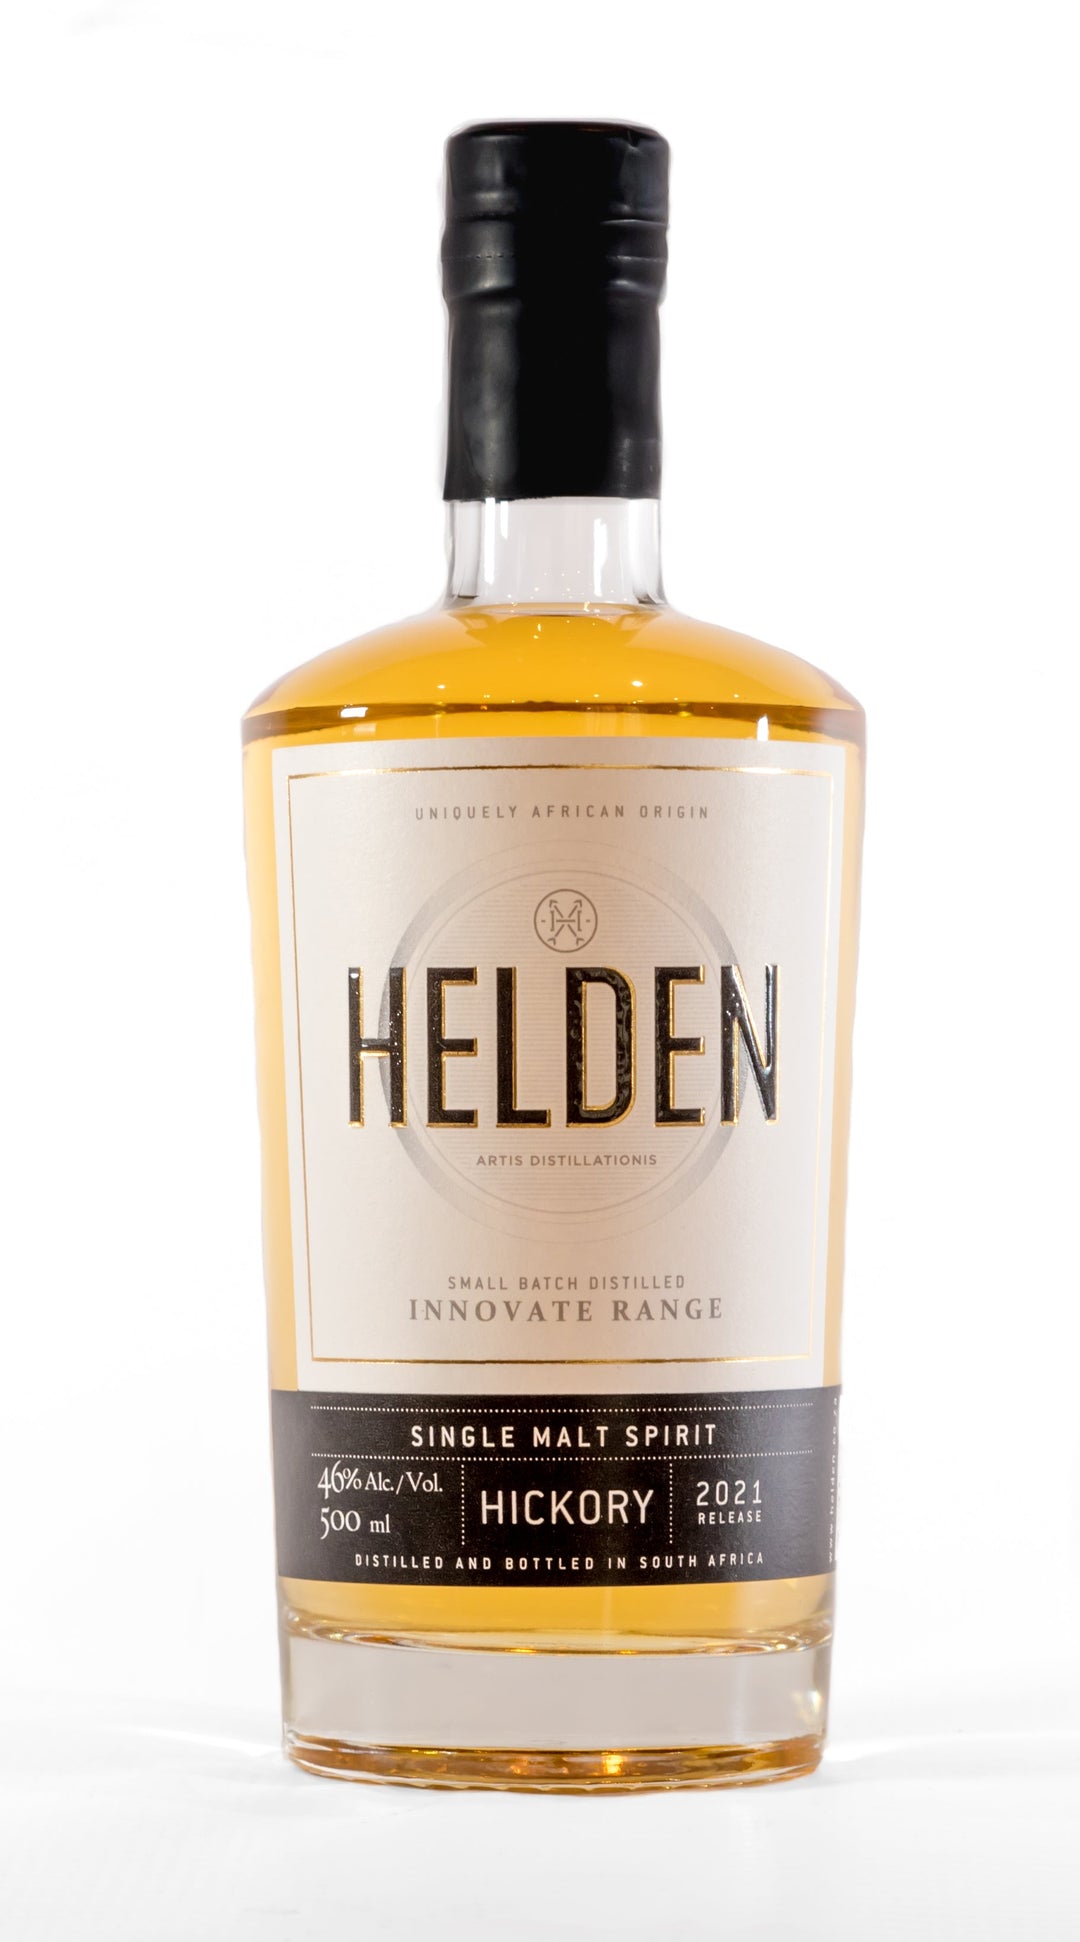 Single Malt Spirit finished on Hickory Wood - Helden Distillery